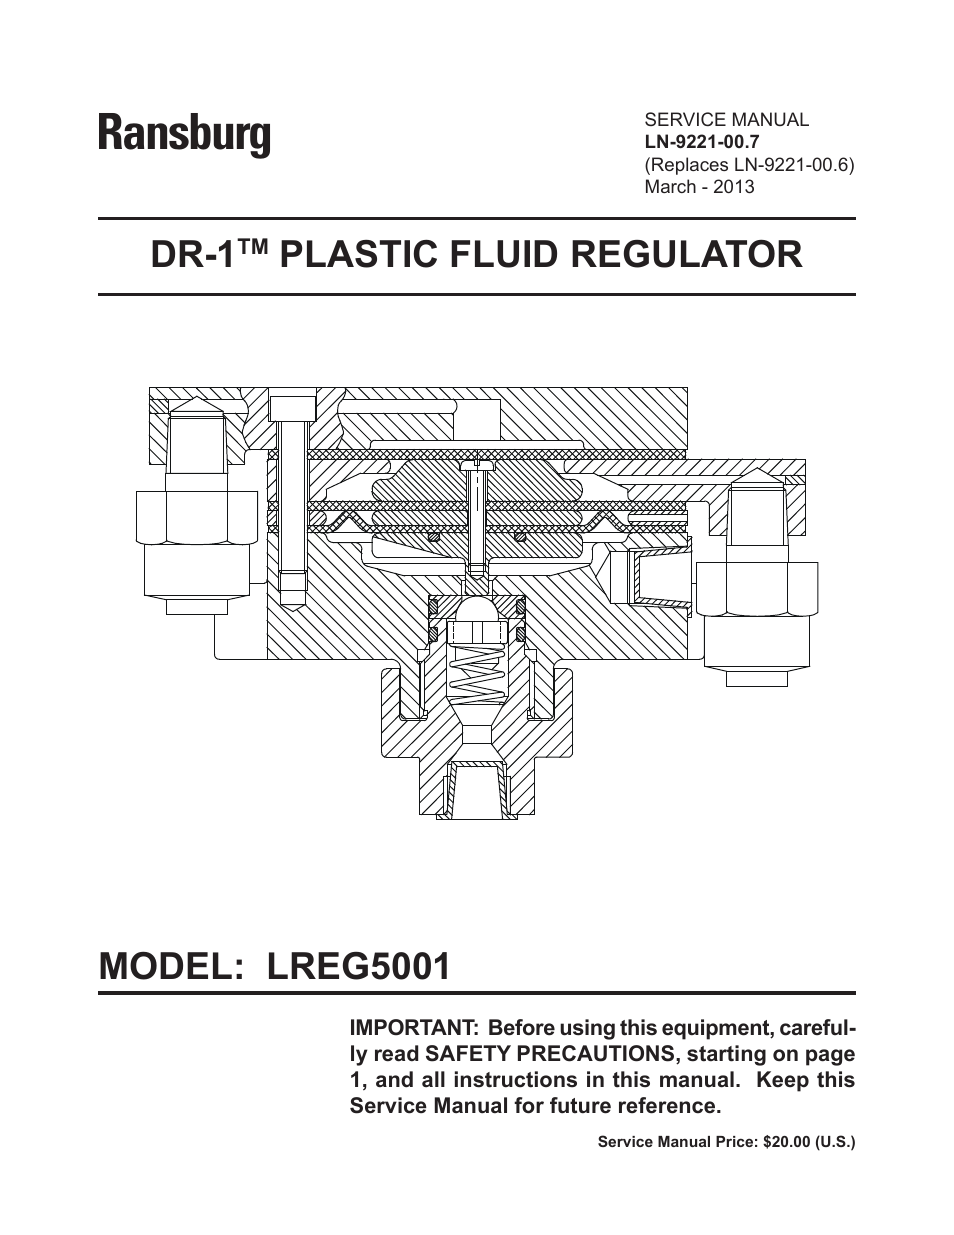 DR-1 Plastic Fluid Regulator LREG5001